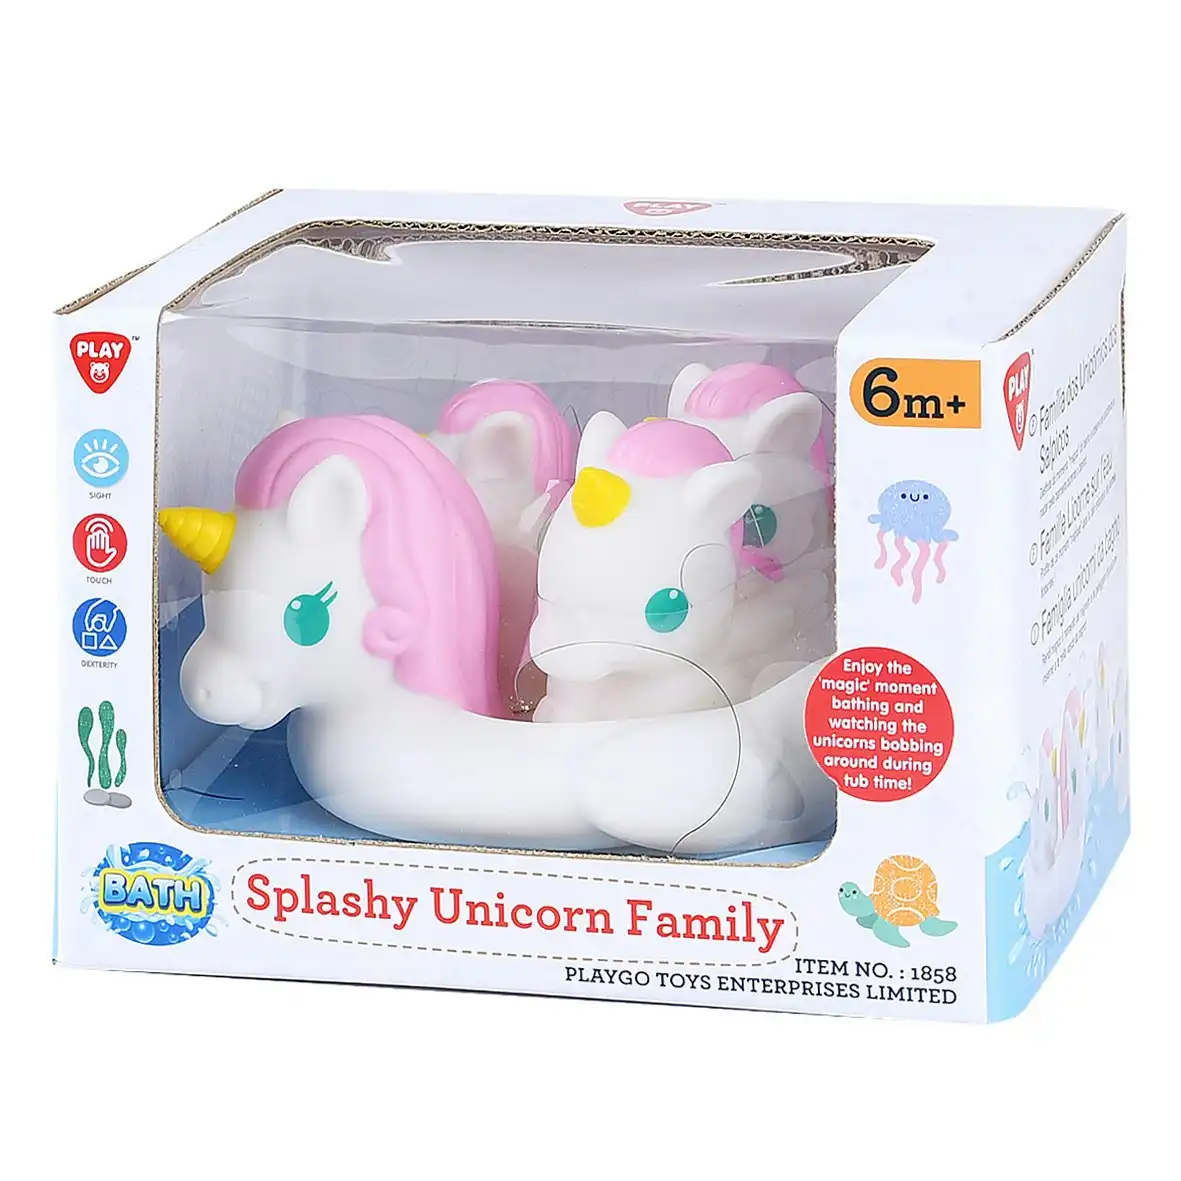 Splashy Unicorn Family